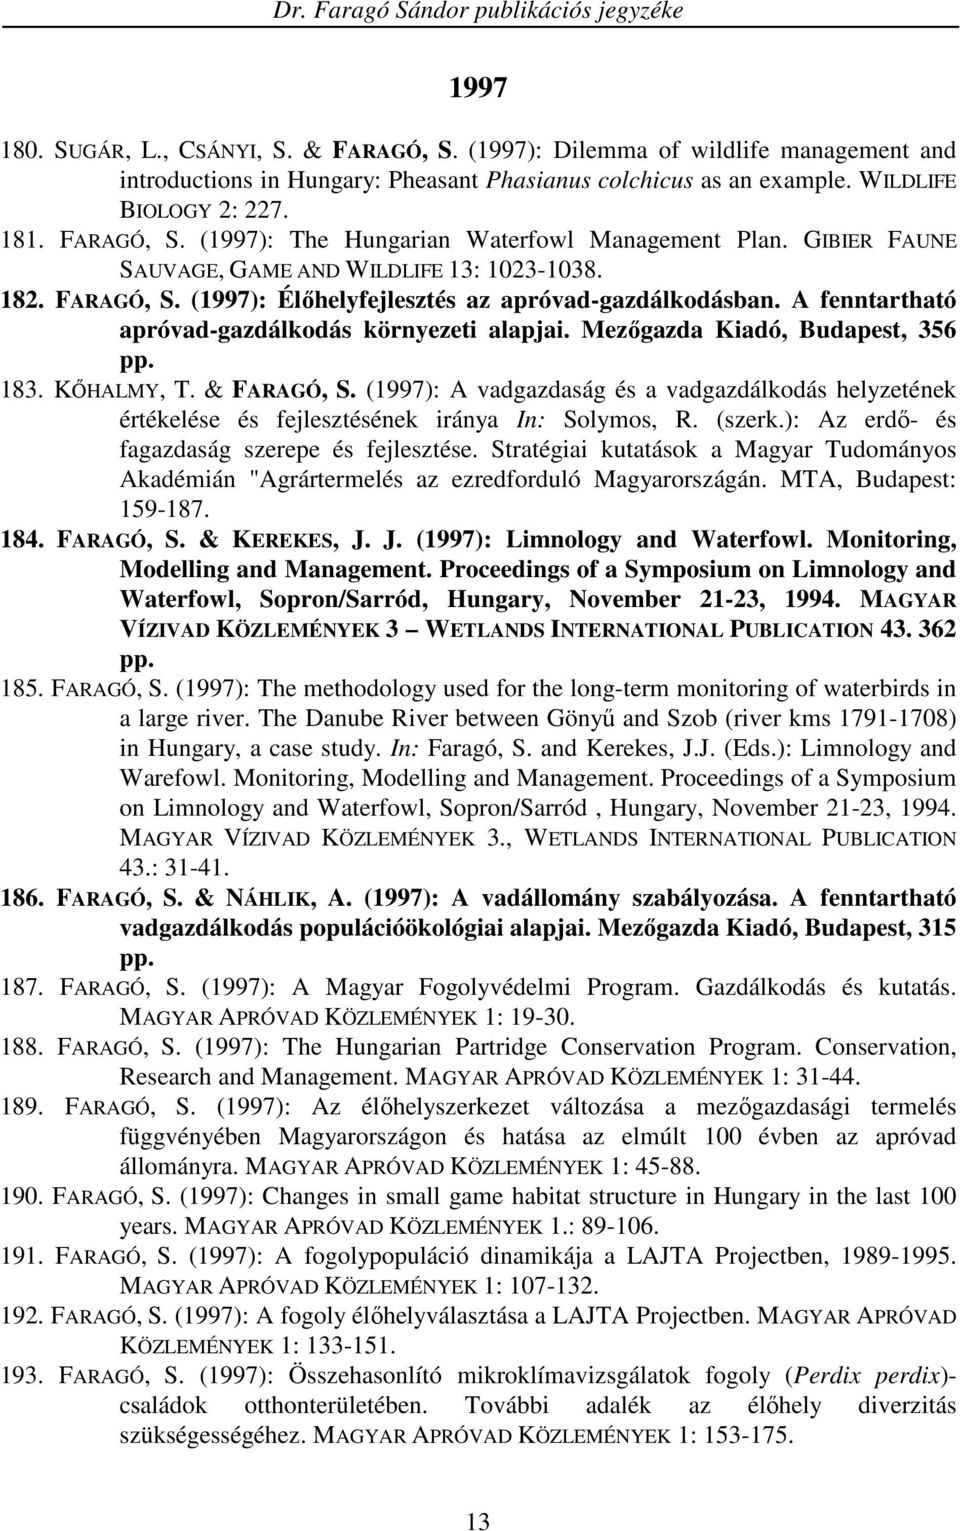 Mezıgazda Kiadó, Budapest, 356 pp. 183. KİHALMY, T. & FARAGÓ, S. (1997): A vadgazdaság és a vadgazdálkodás helyzetének értékelése és fejlesztésének iránya In: Solymos, R. (szerk.